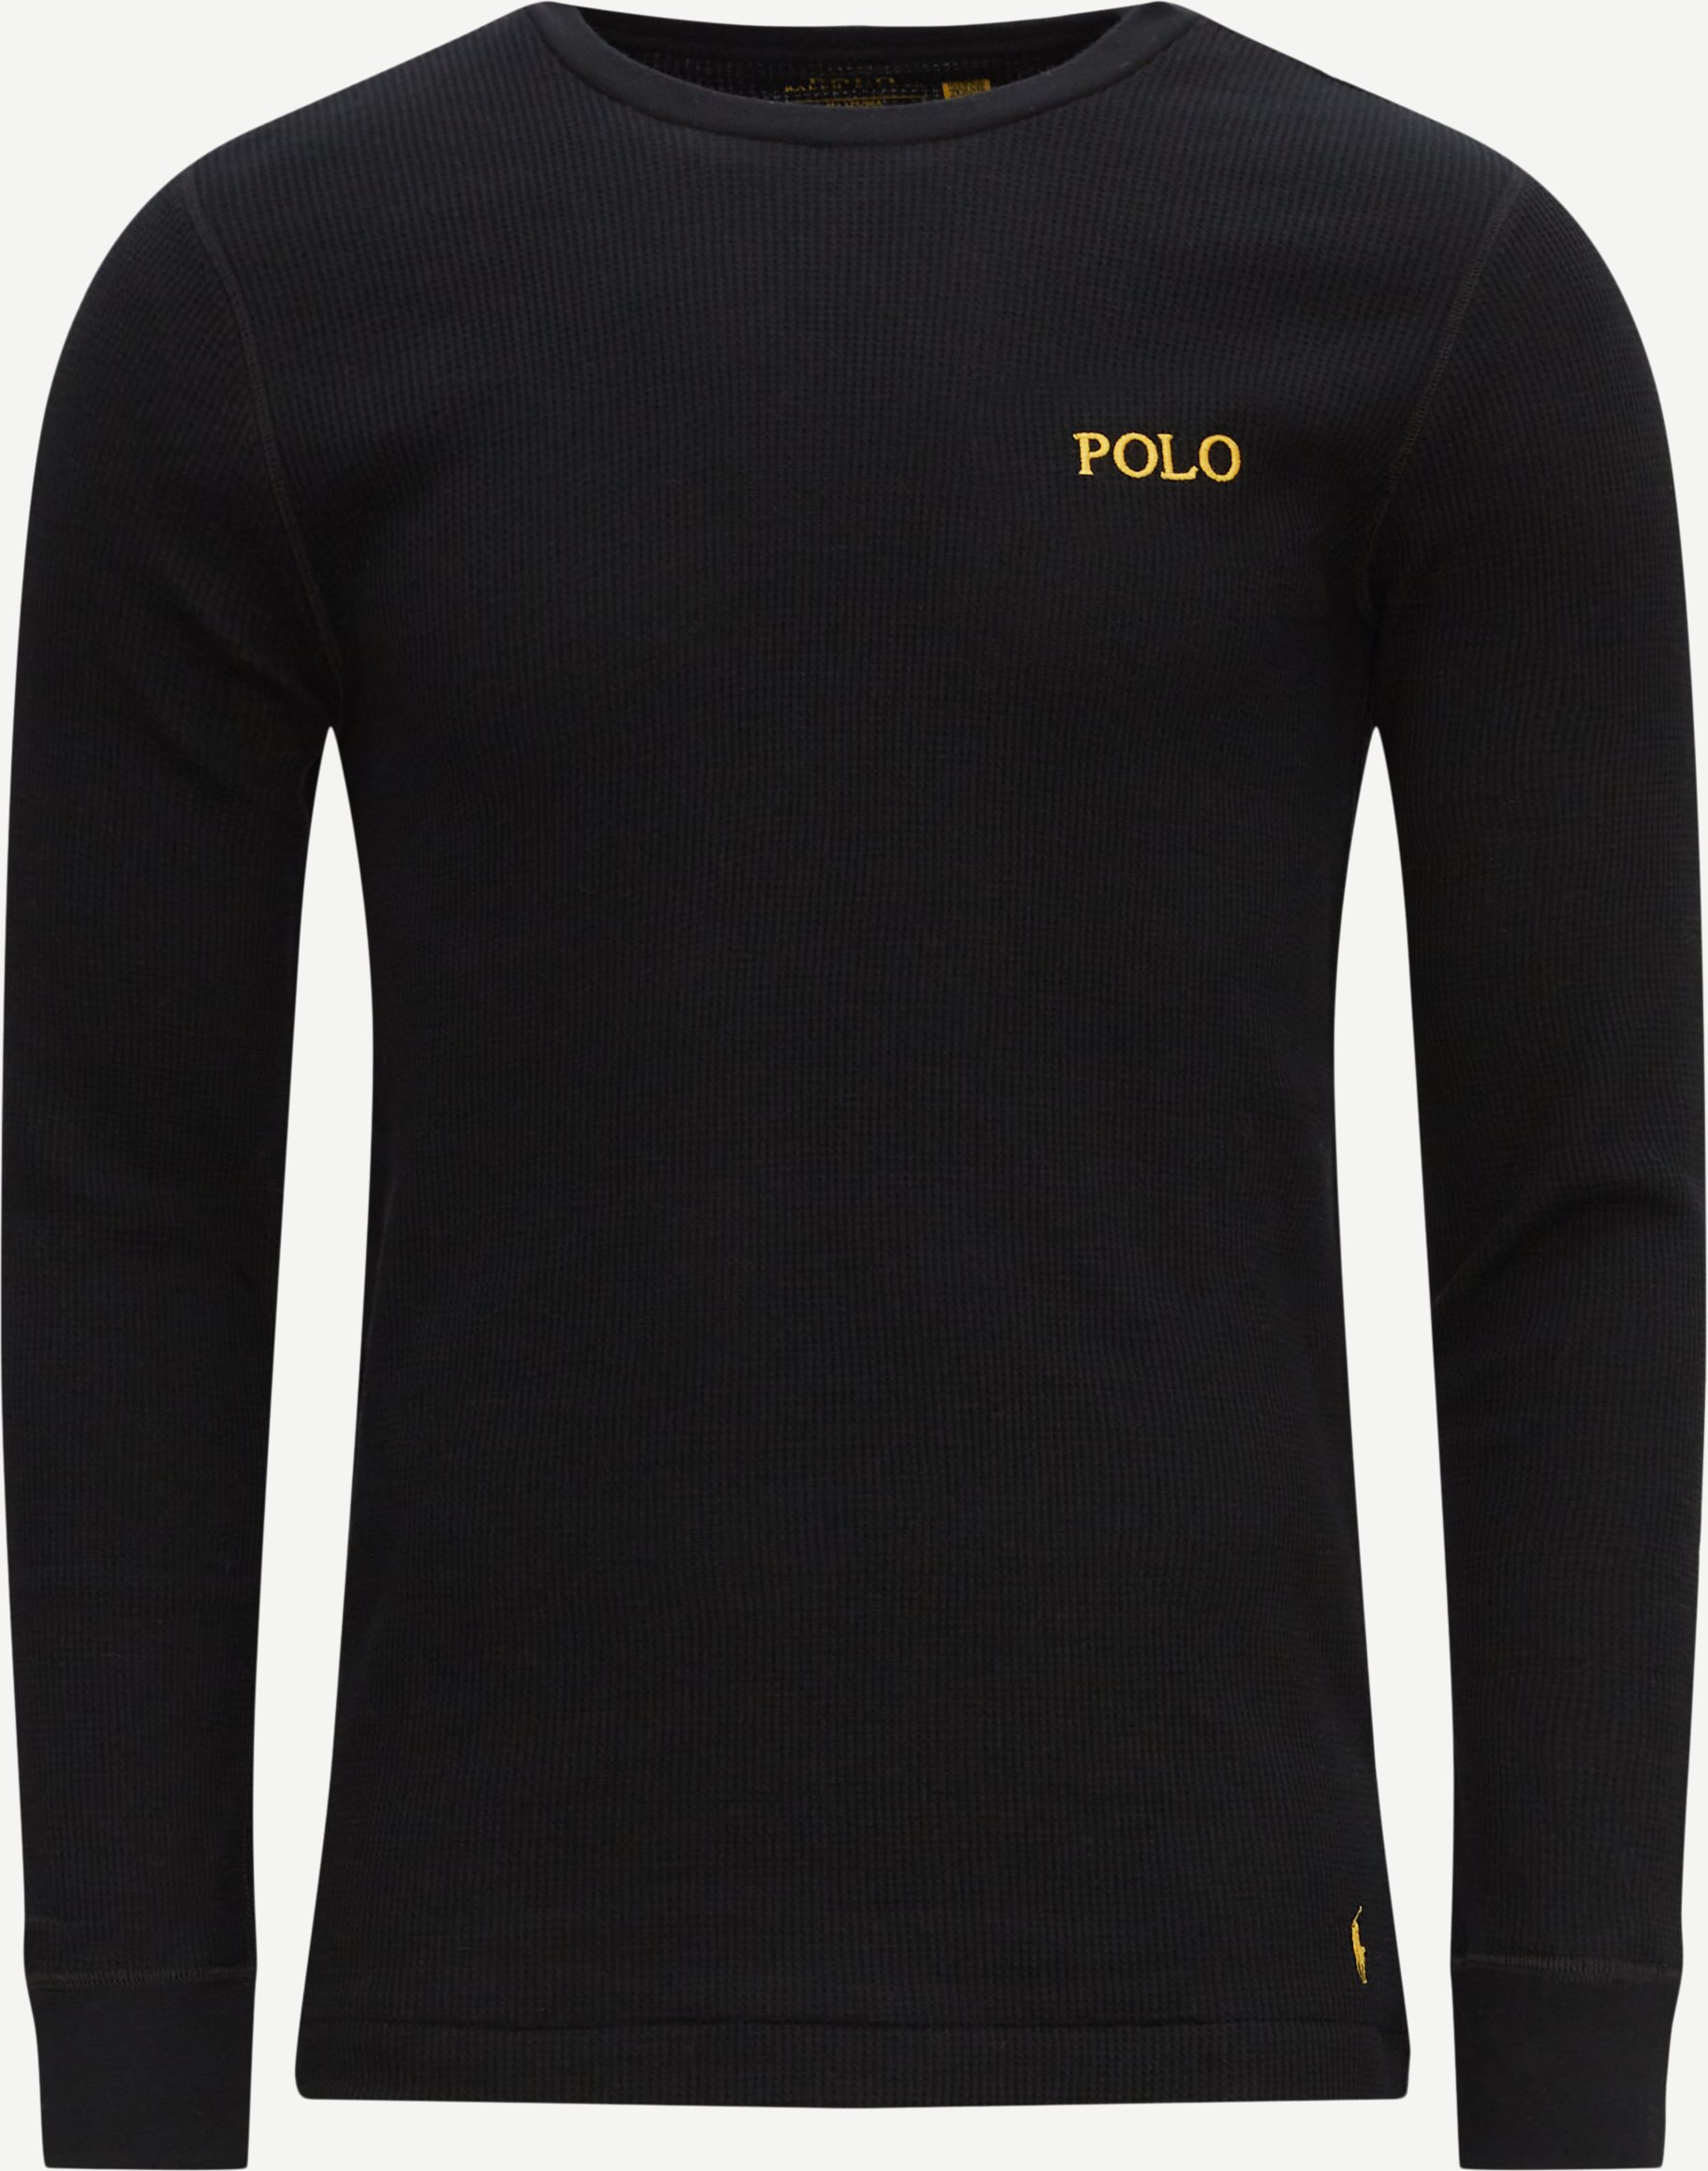 Polo Ralph Lauren T-shirts 714899615 LS CREW SLEEP TOP Sort